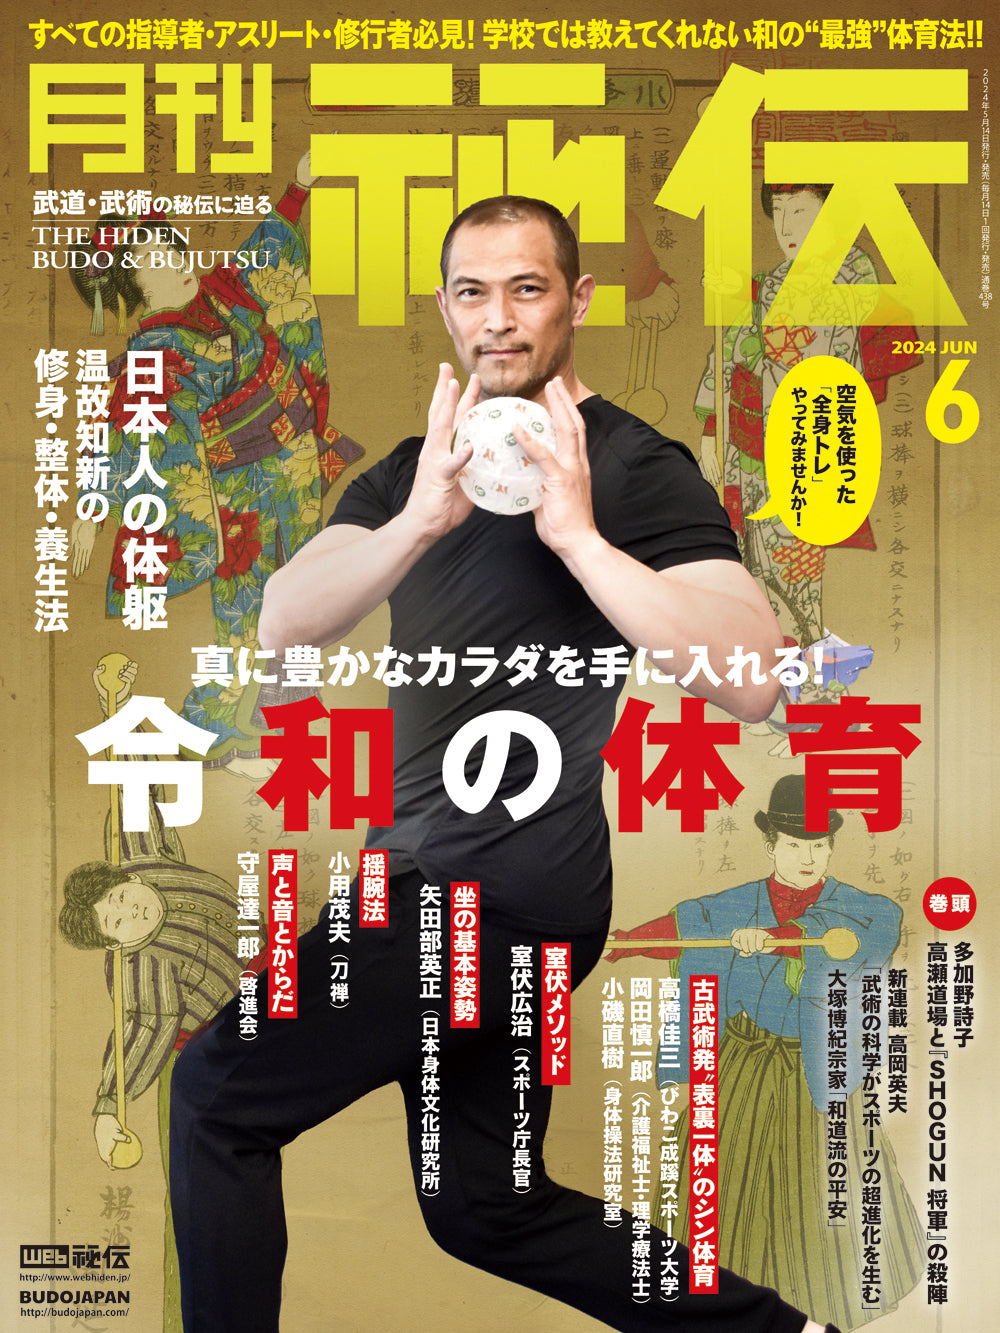 Hiden Budo & Bujutsu Magazine June 2024